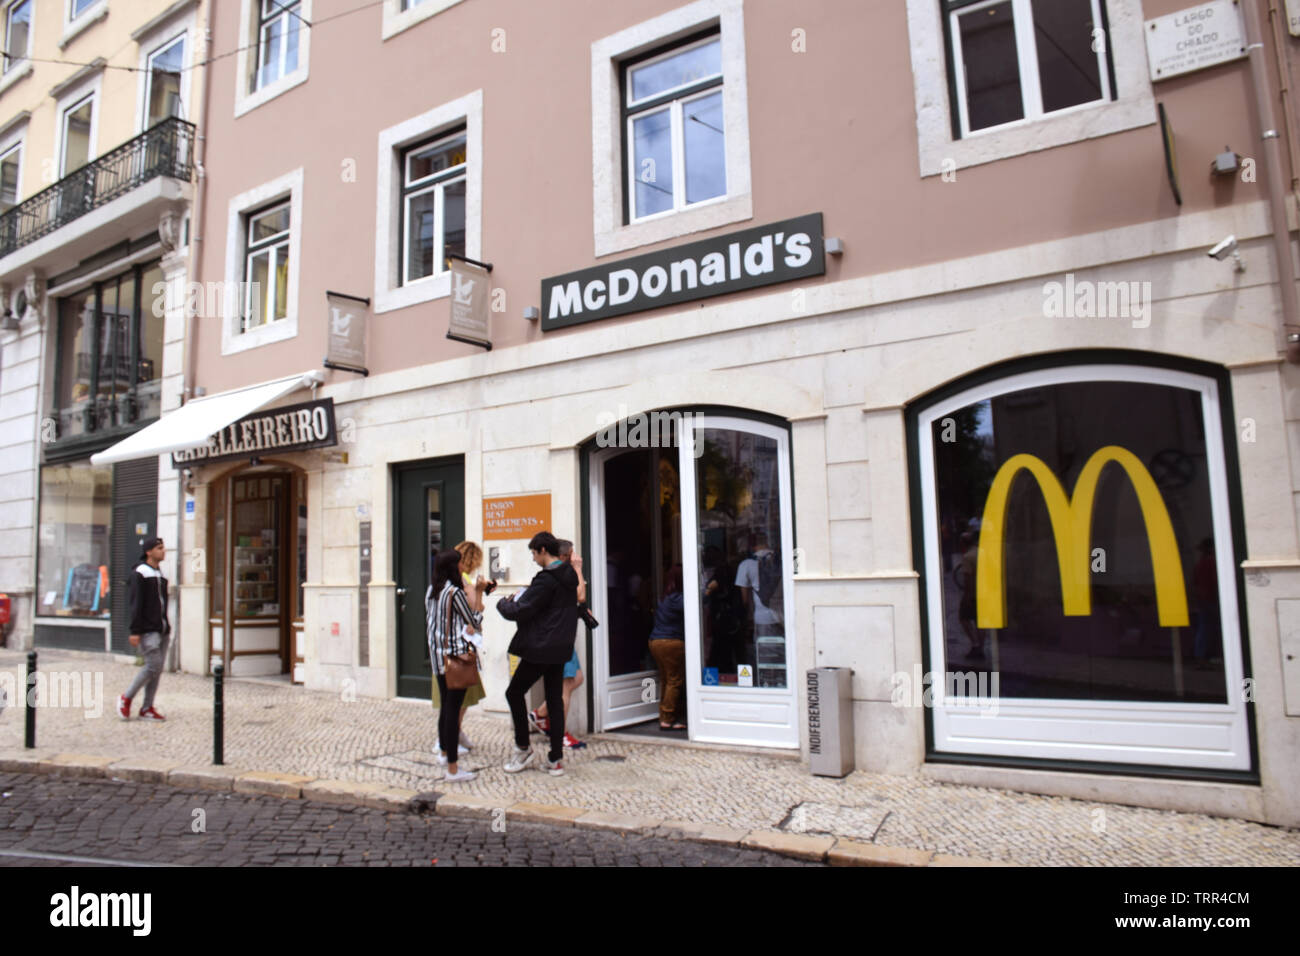 McDonalds, Chiado, Lisbonne, Portugal, Juin 2019 Banque D'Images